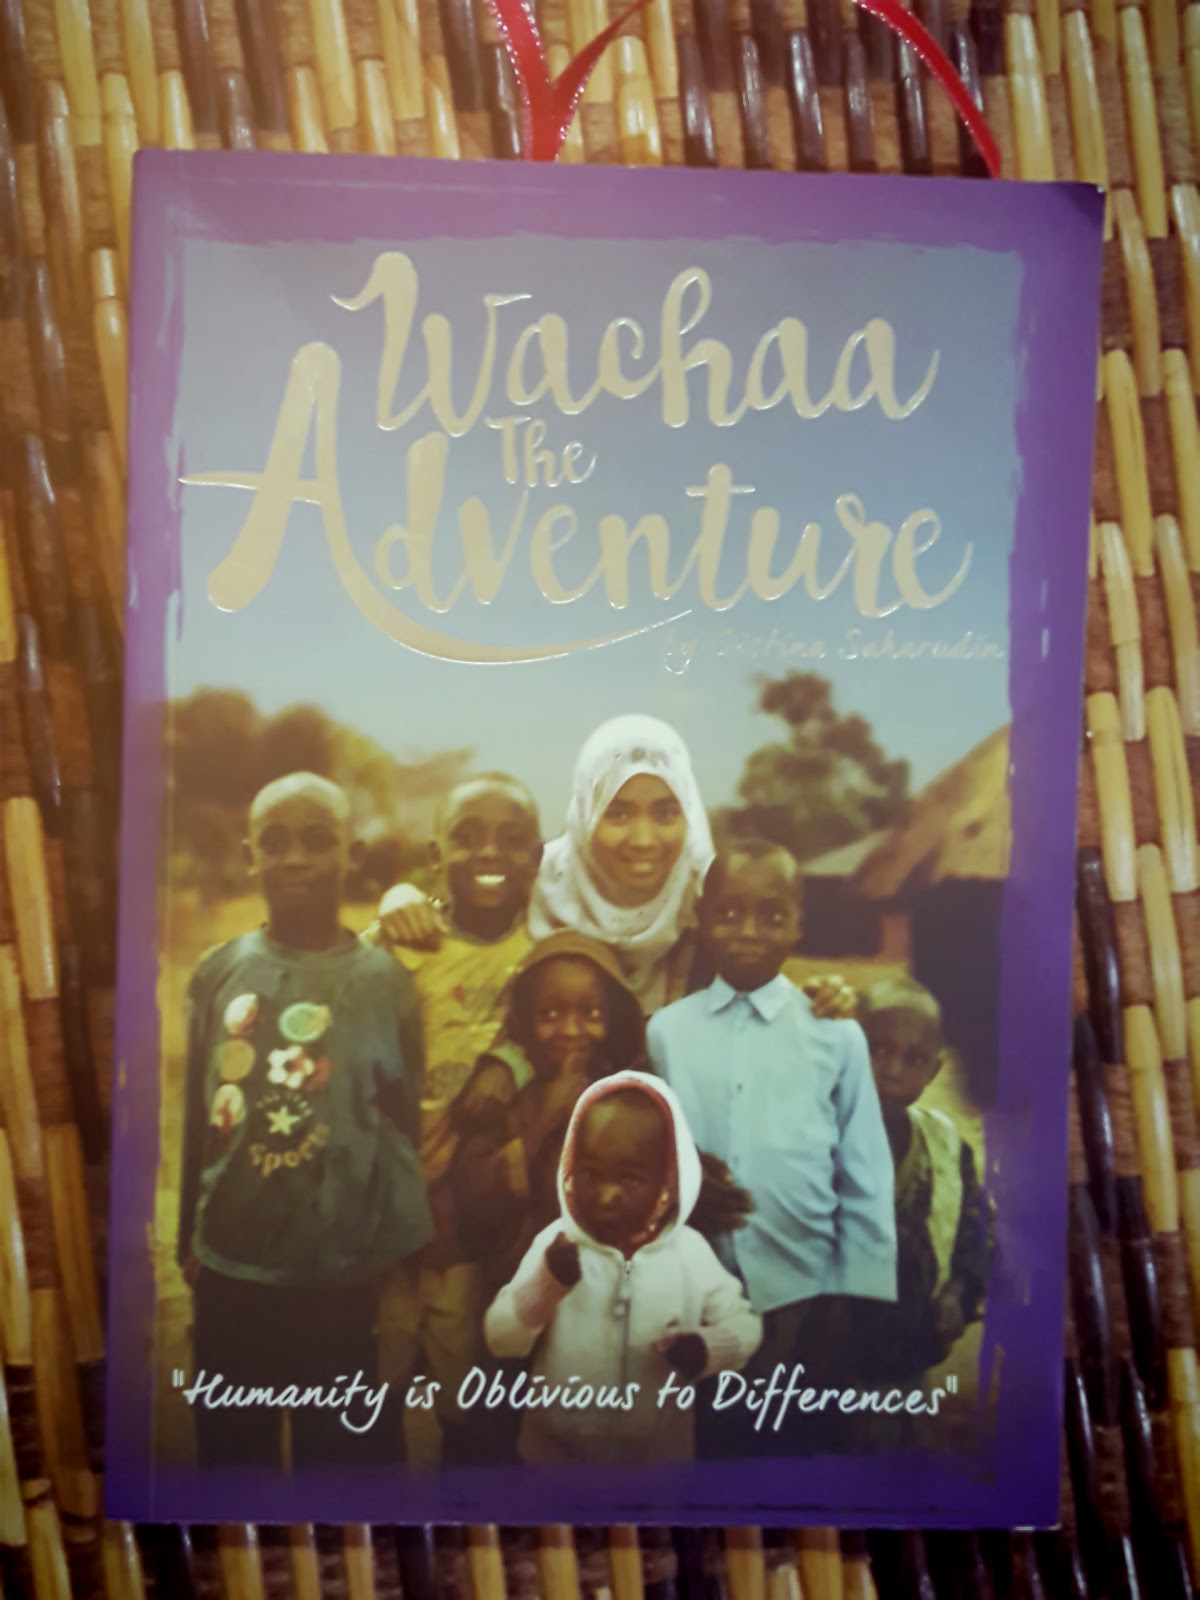 Wachaa The Adventure (Qistina Saharudin)